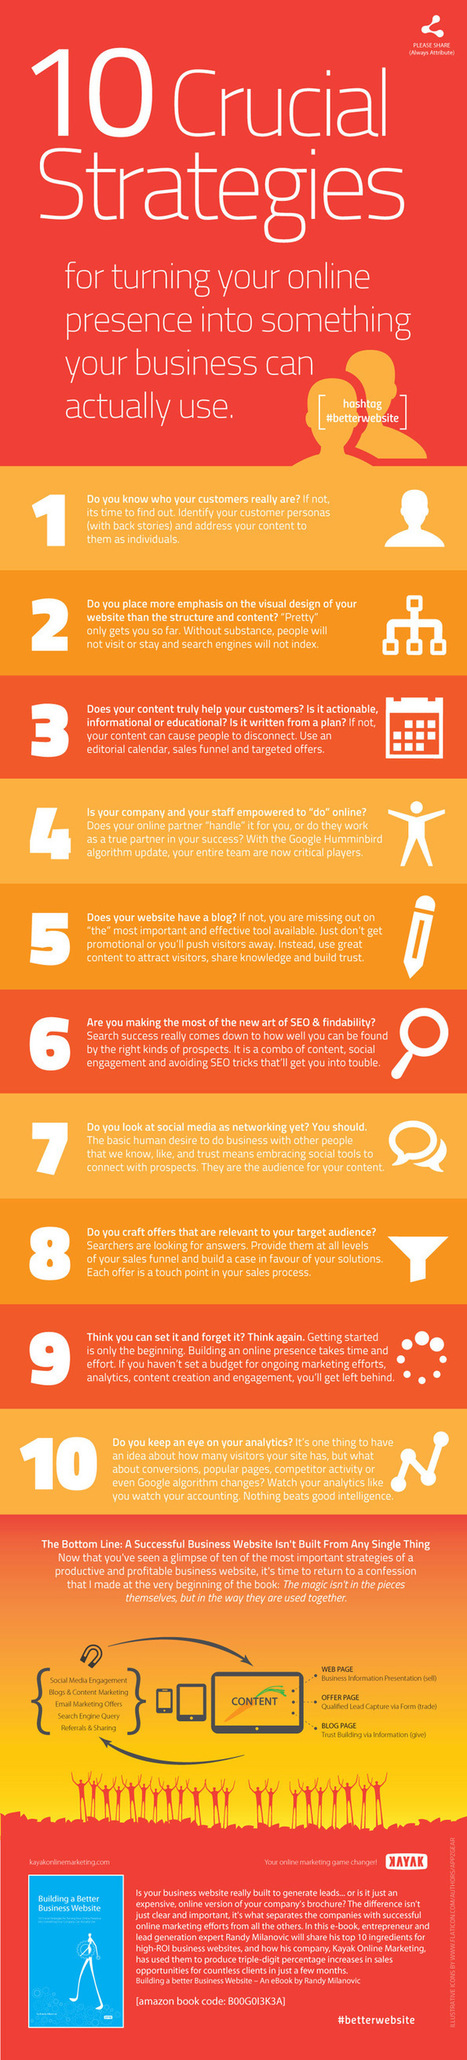 10 estrategias cruciales para una buena web de empresa #infografia #infographic #marketing | Seo, Social Media Marketing | Scoop.it